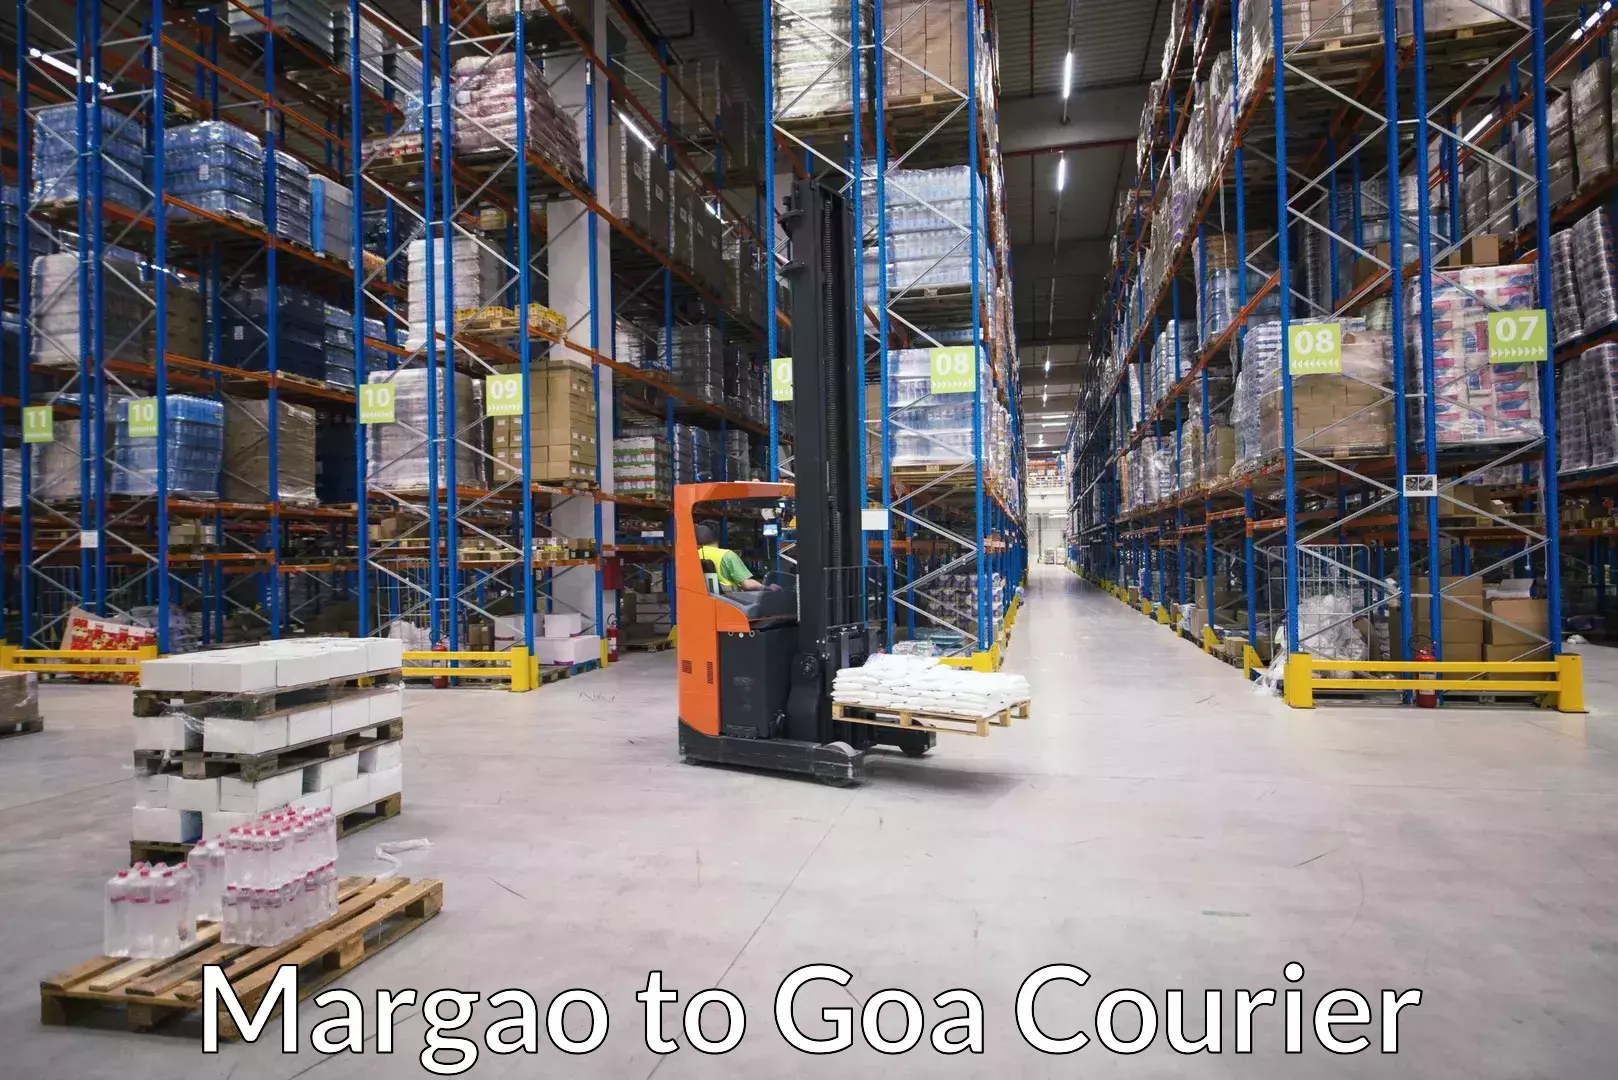 Luggage forwarding service Margao to Goa